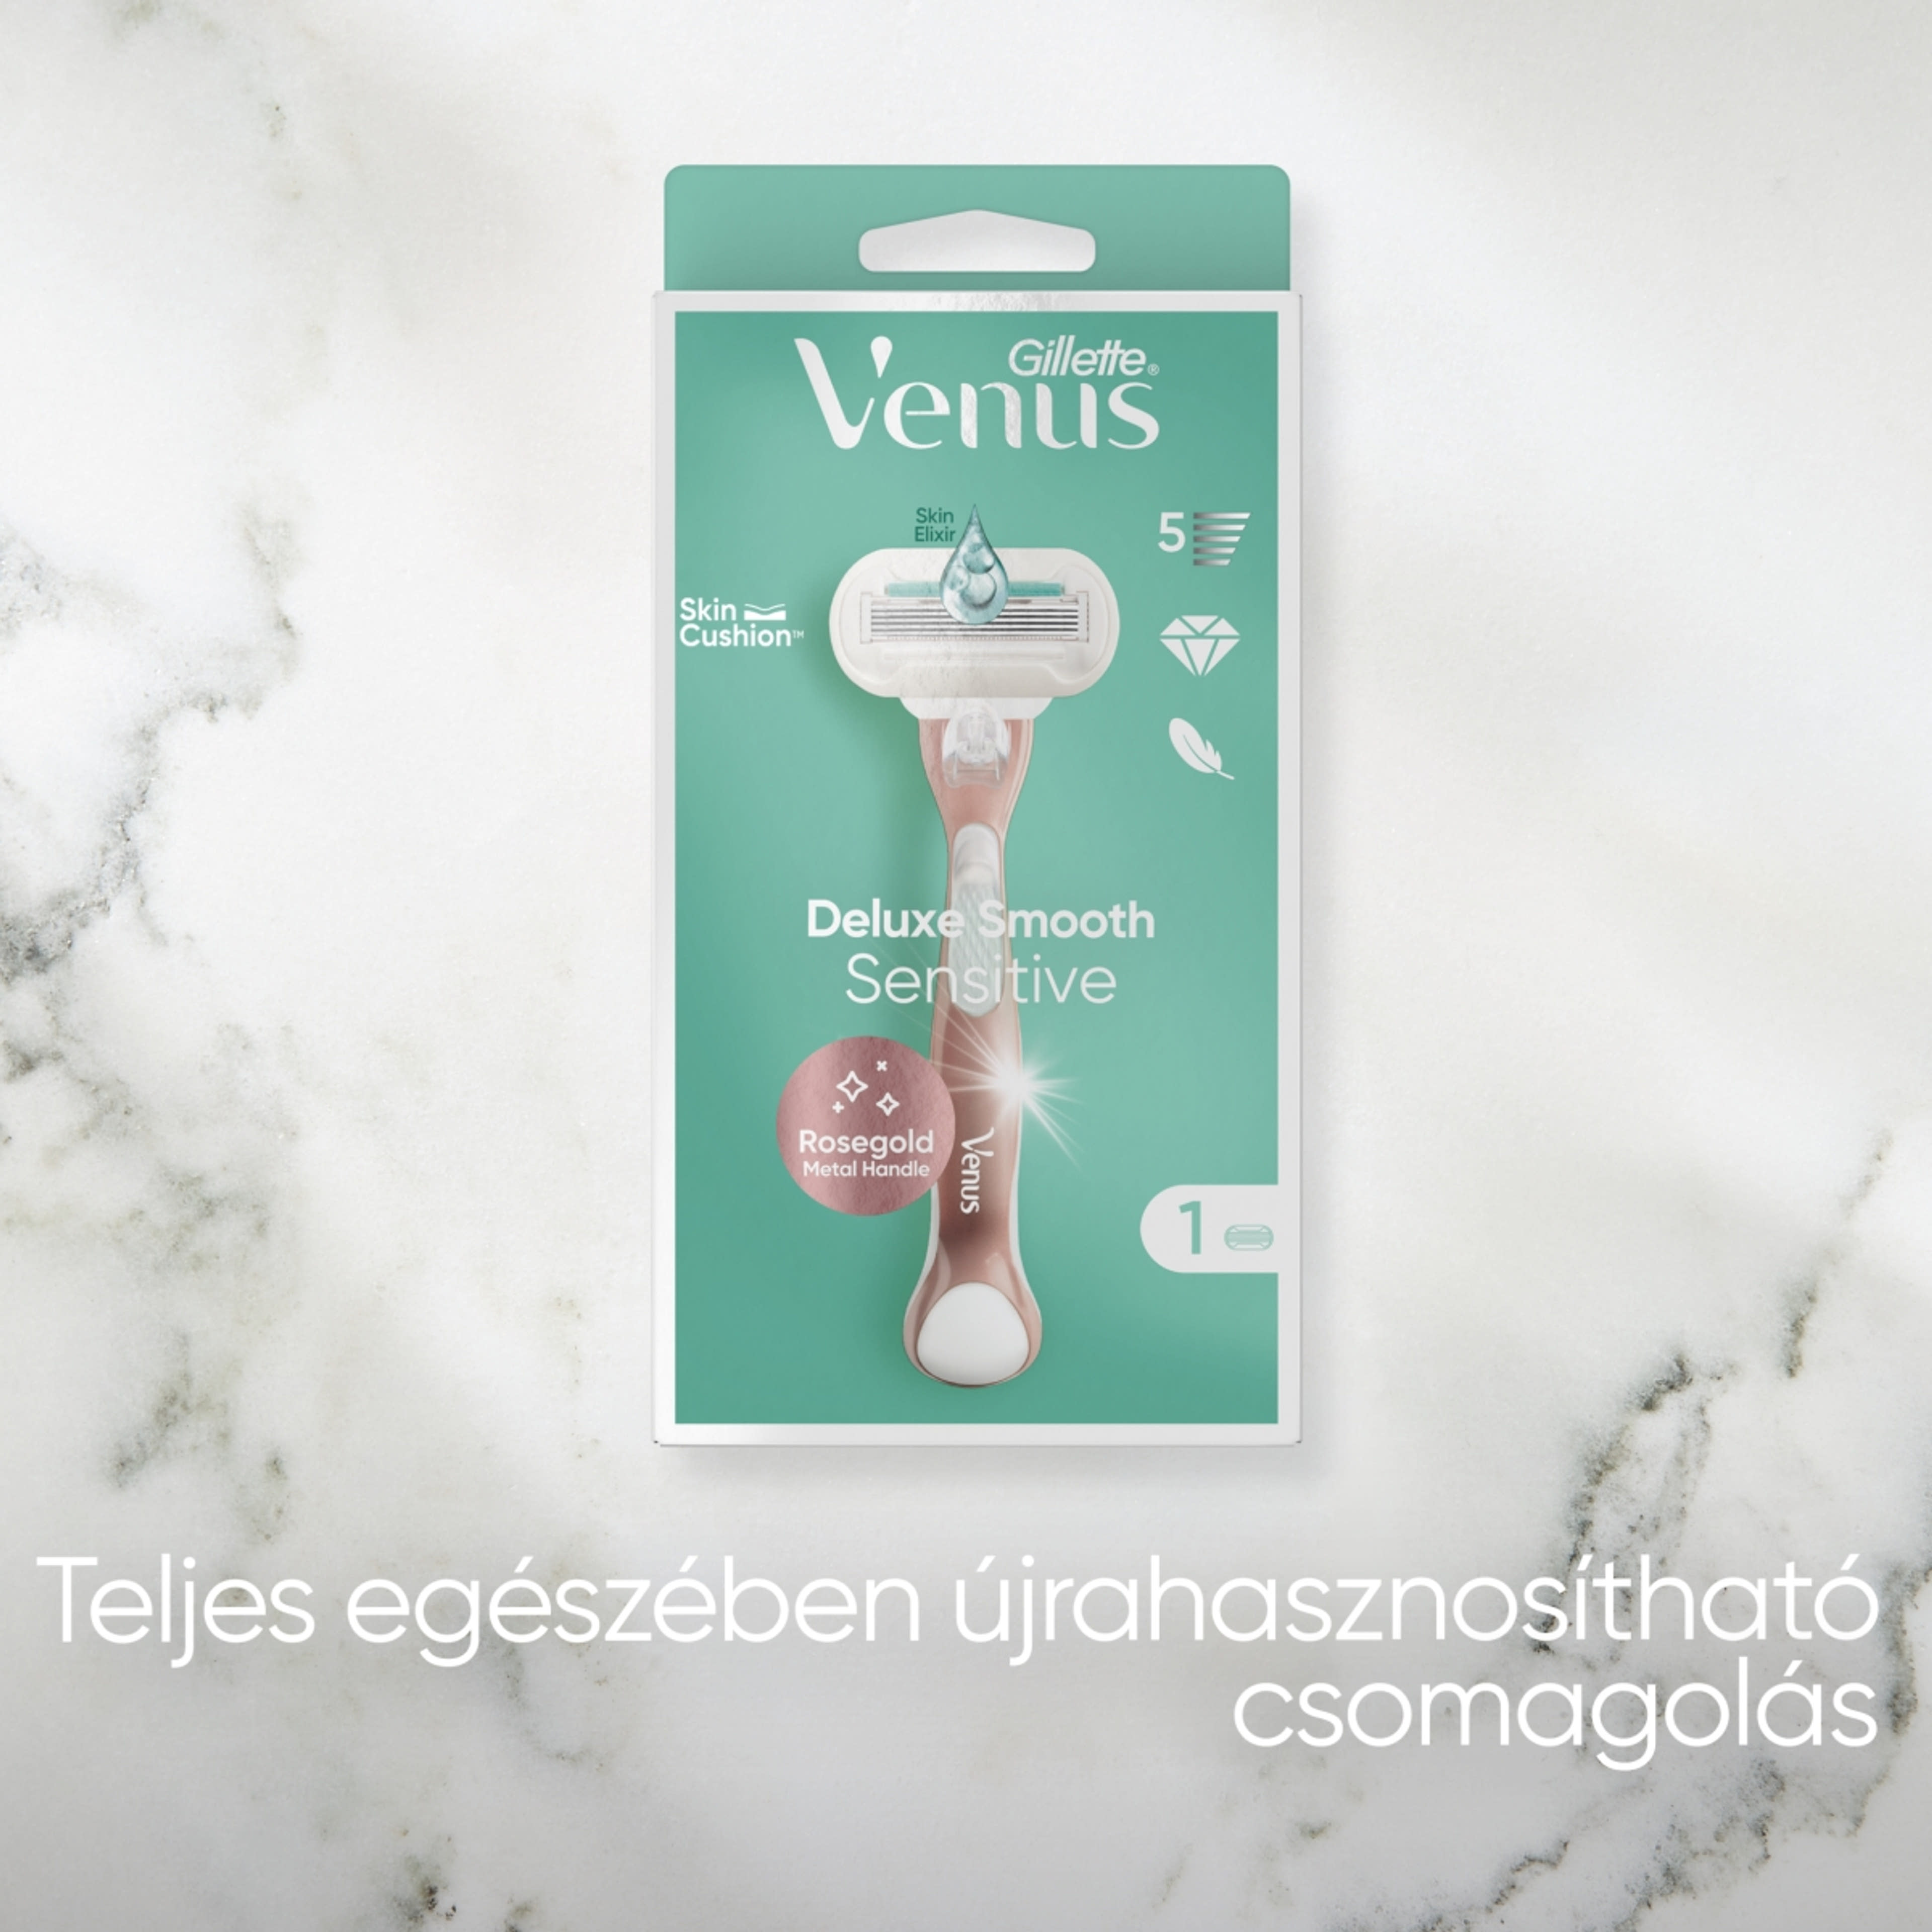 Gillette Venus Extra Smooth Sensitive RoseGold borotvakészülék 5 pengés + 1 borotvabetét - 1 db-7